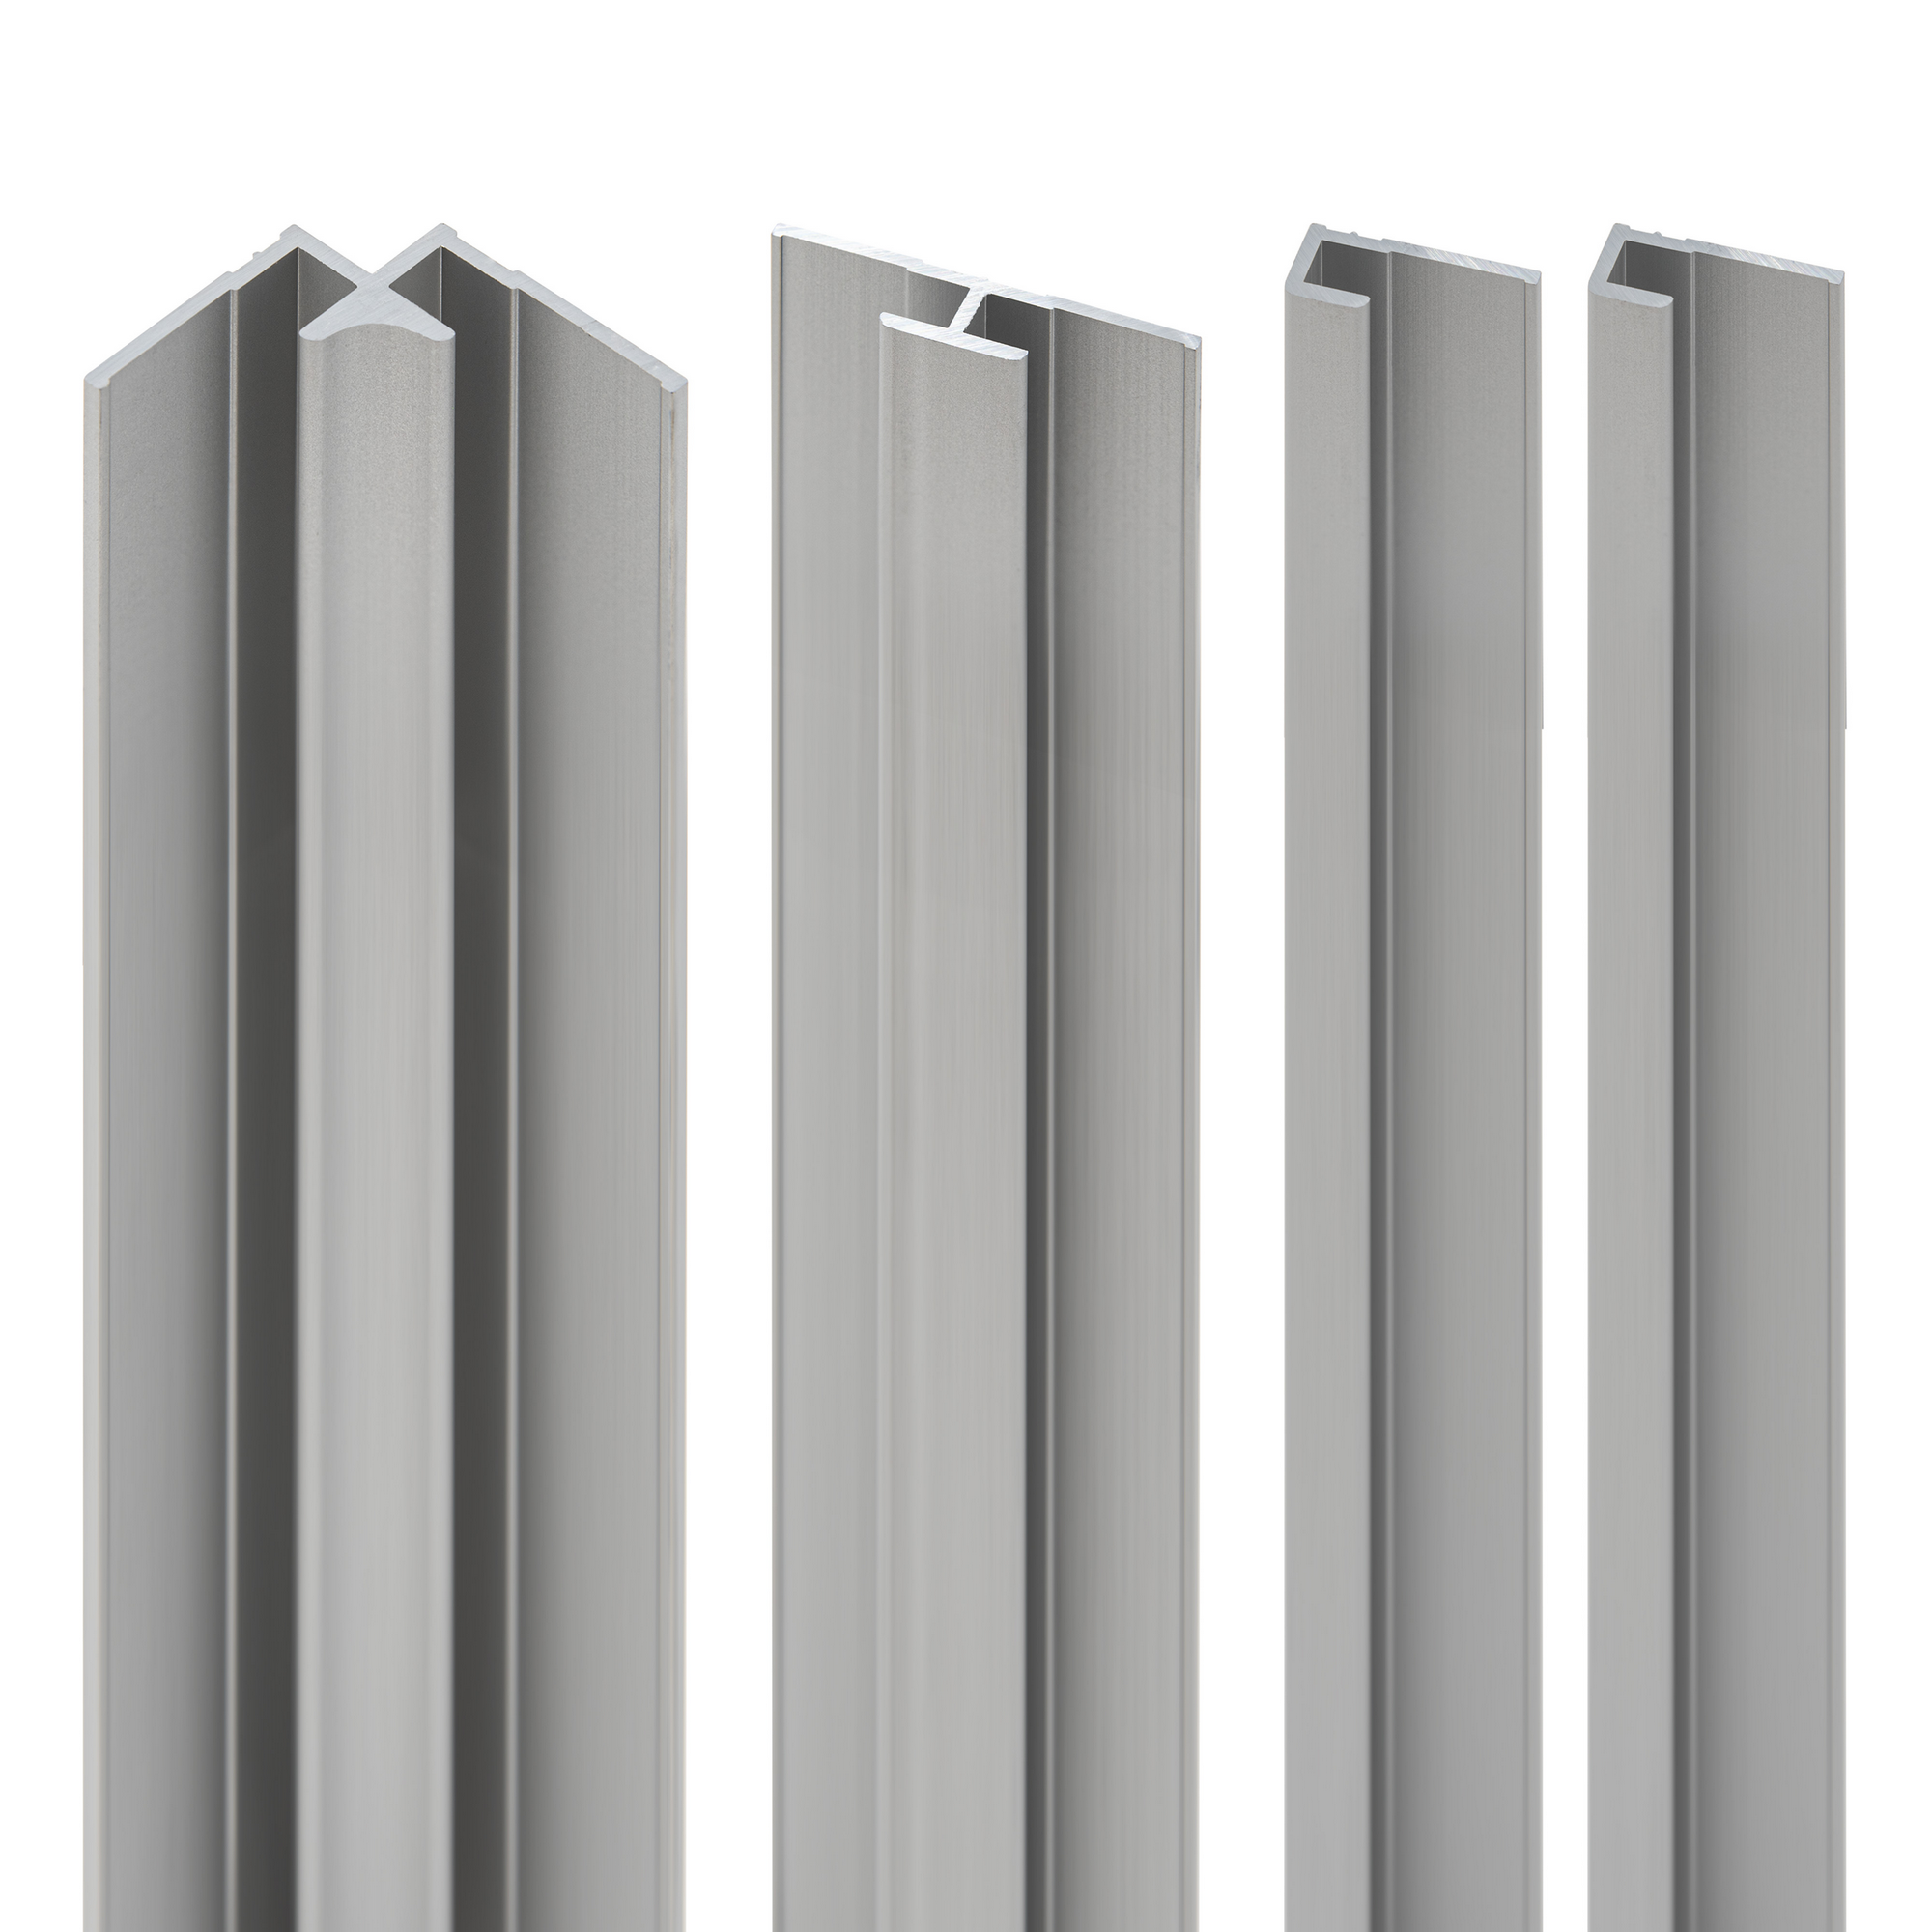 Profil-Set für Duschrückwande 'DecoDesign' aluminiumfarben, 4-teilig + product picture